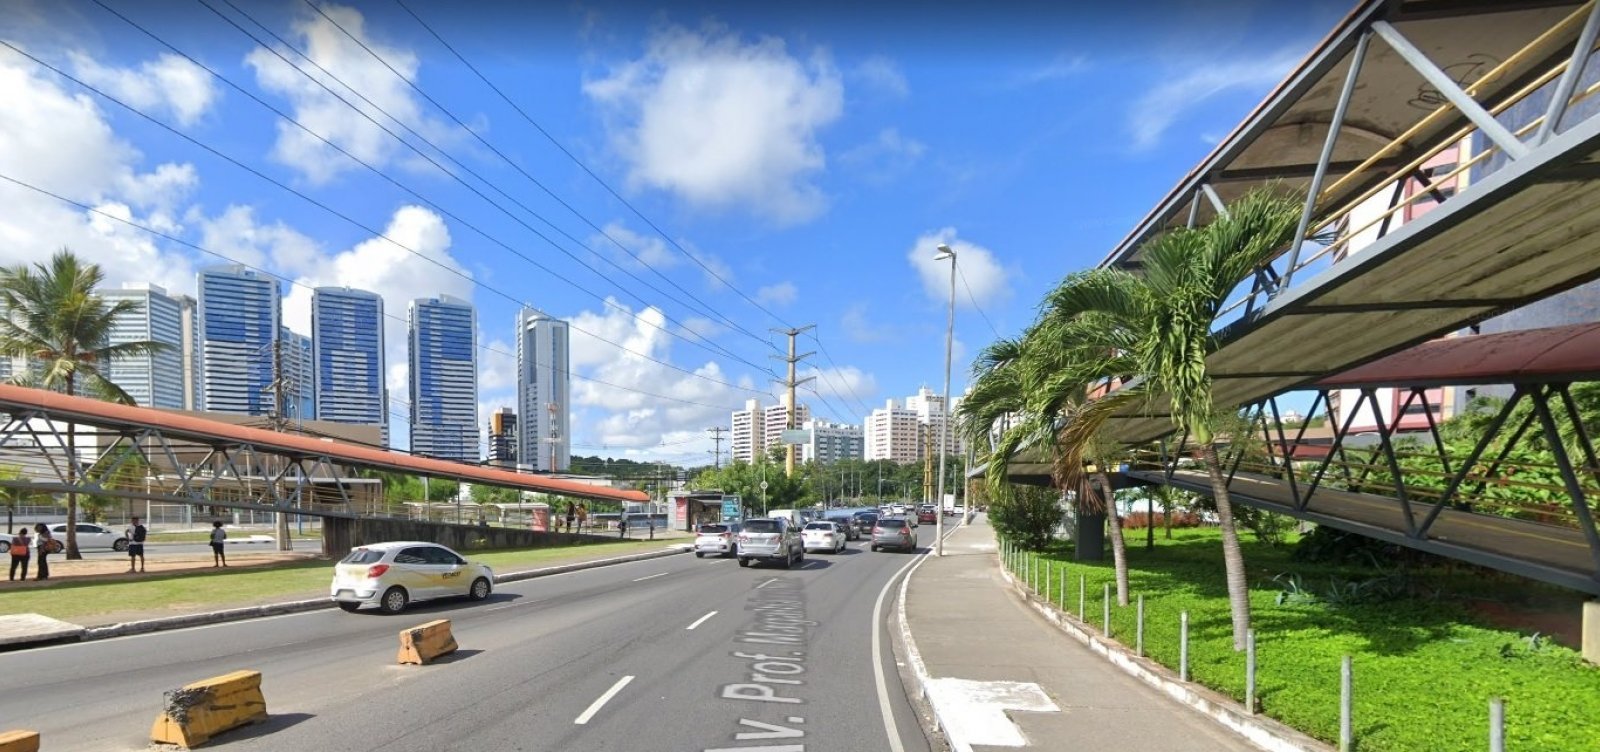 Prefeitura afirma que intervenções viárias na Avenida Tancredo Neves estão 80% concluídas